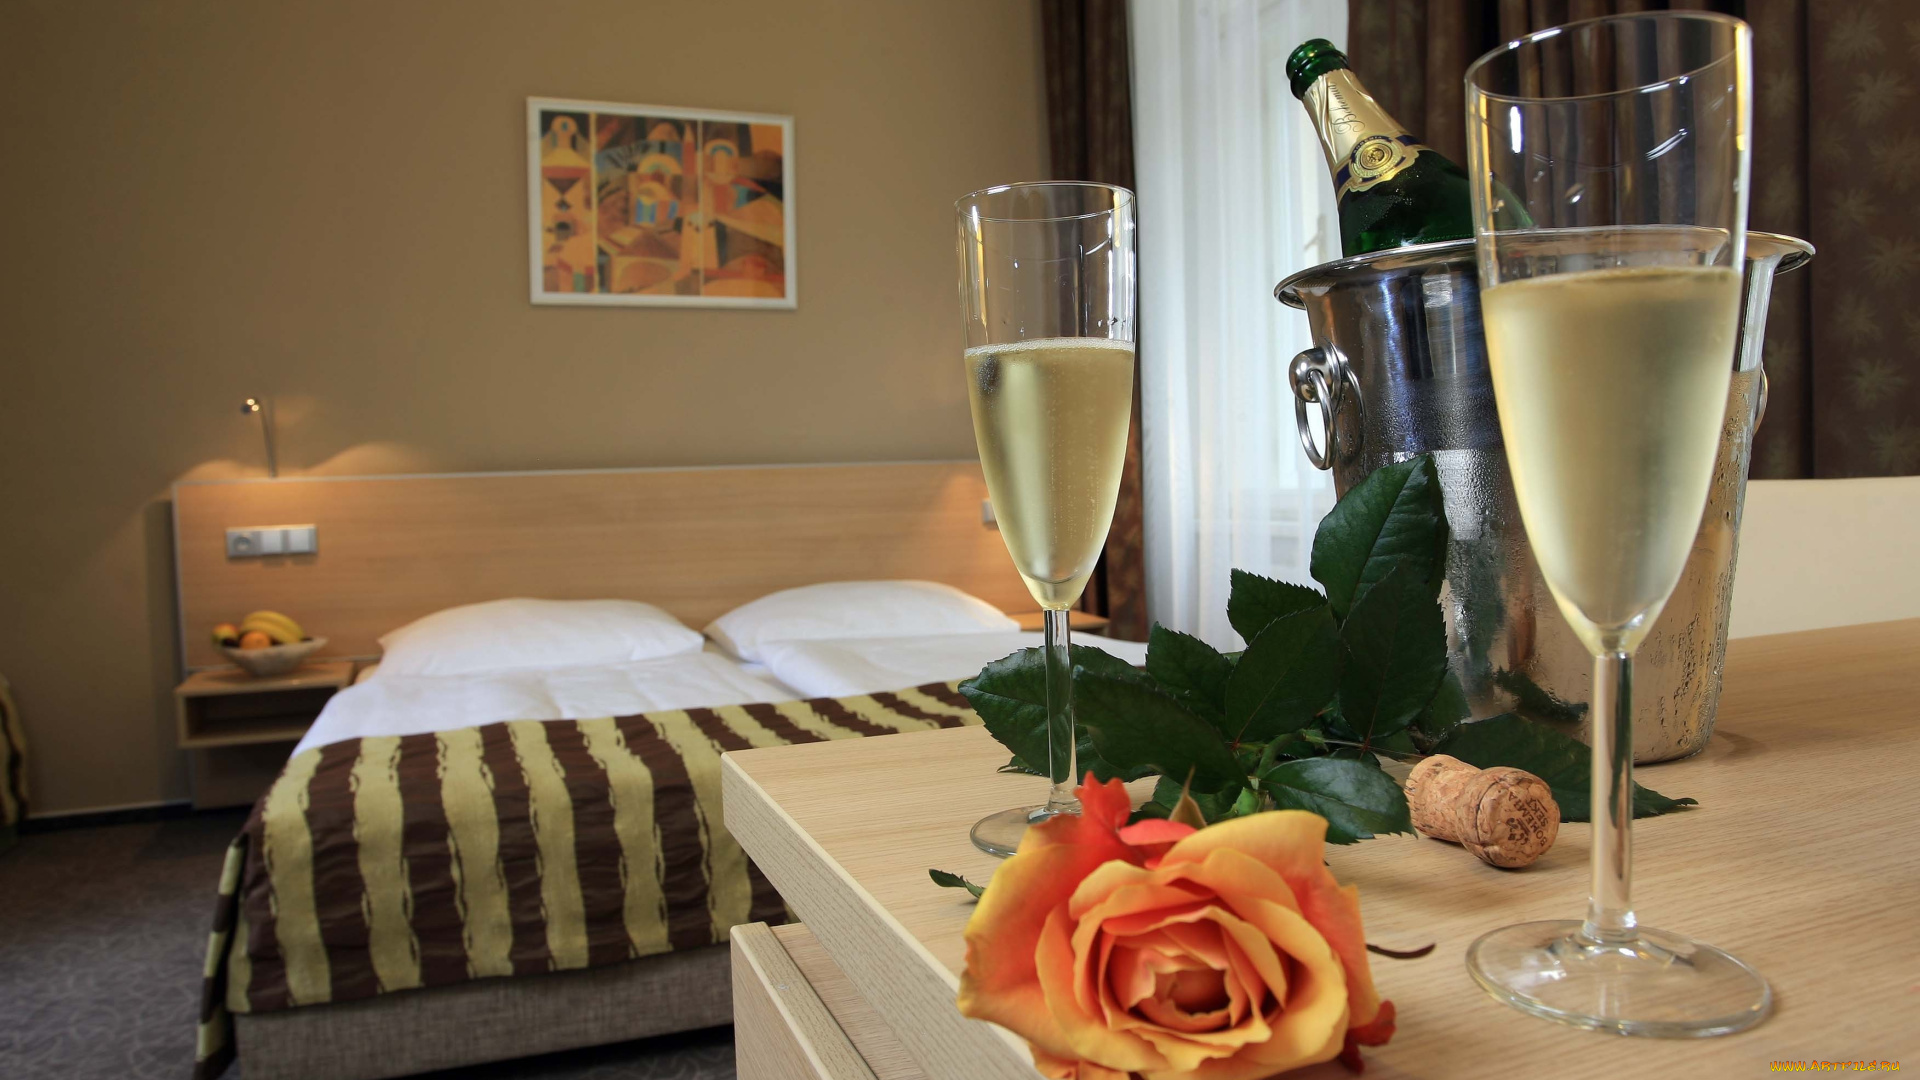 интерьер, спальня, кровать, бокалы, шампанское, роза, бутылка